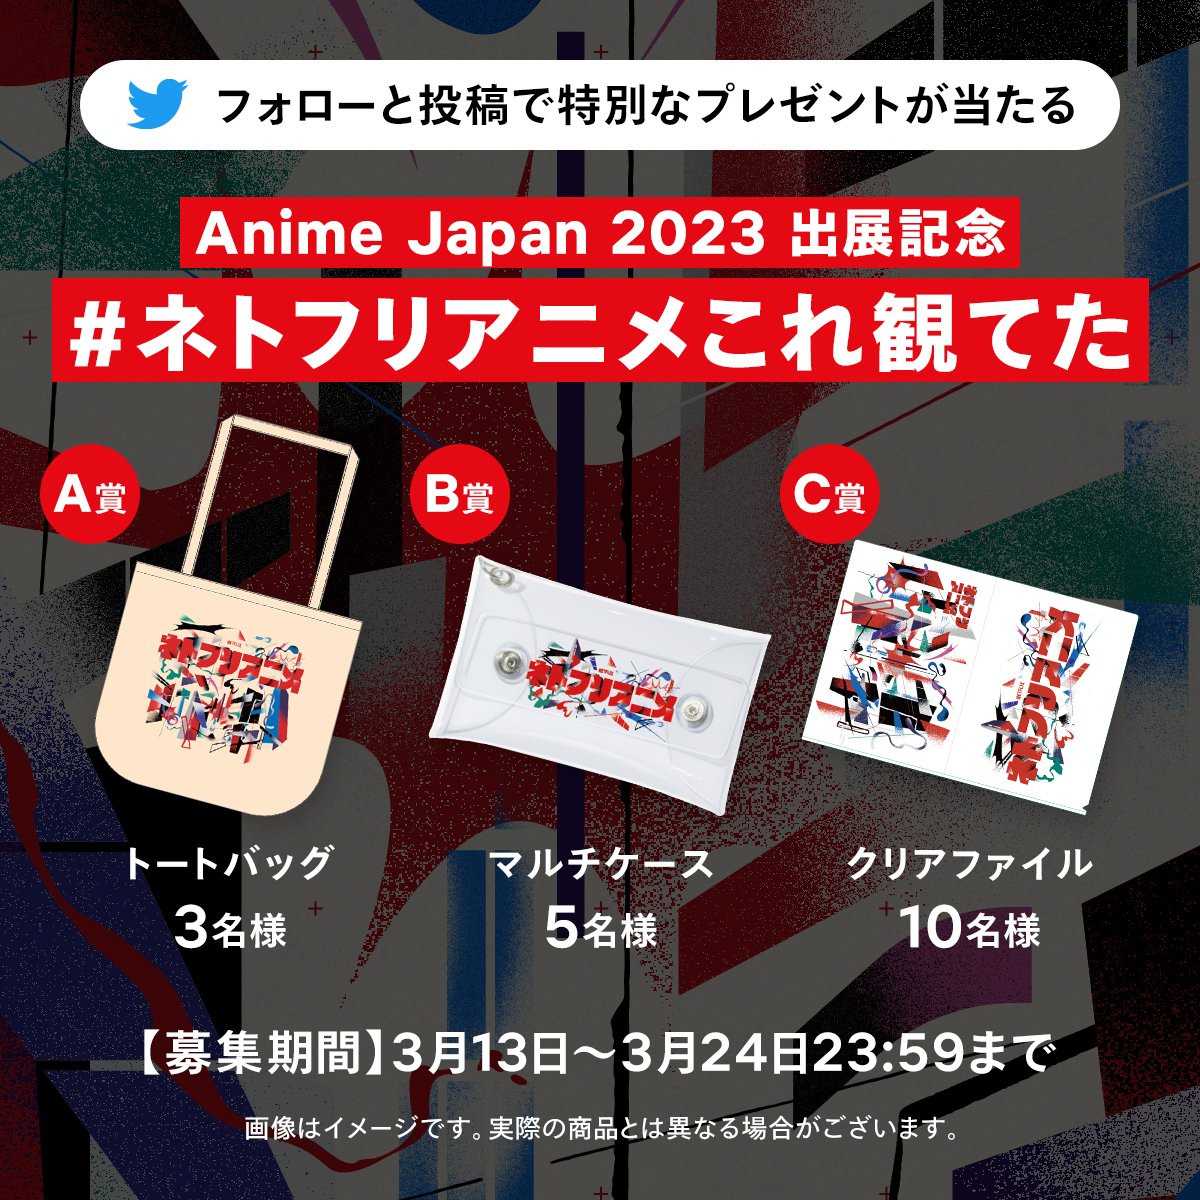 Netflix chega ao AnimeJapan com um catálogo ampliado, incluindo